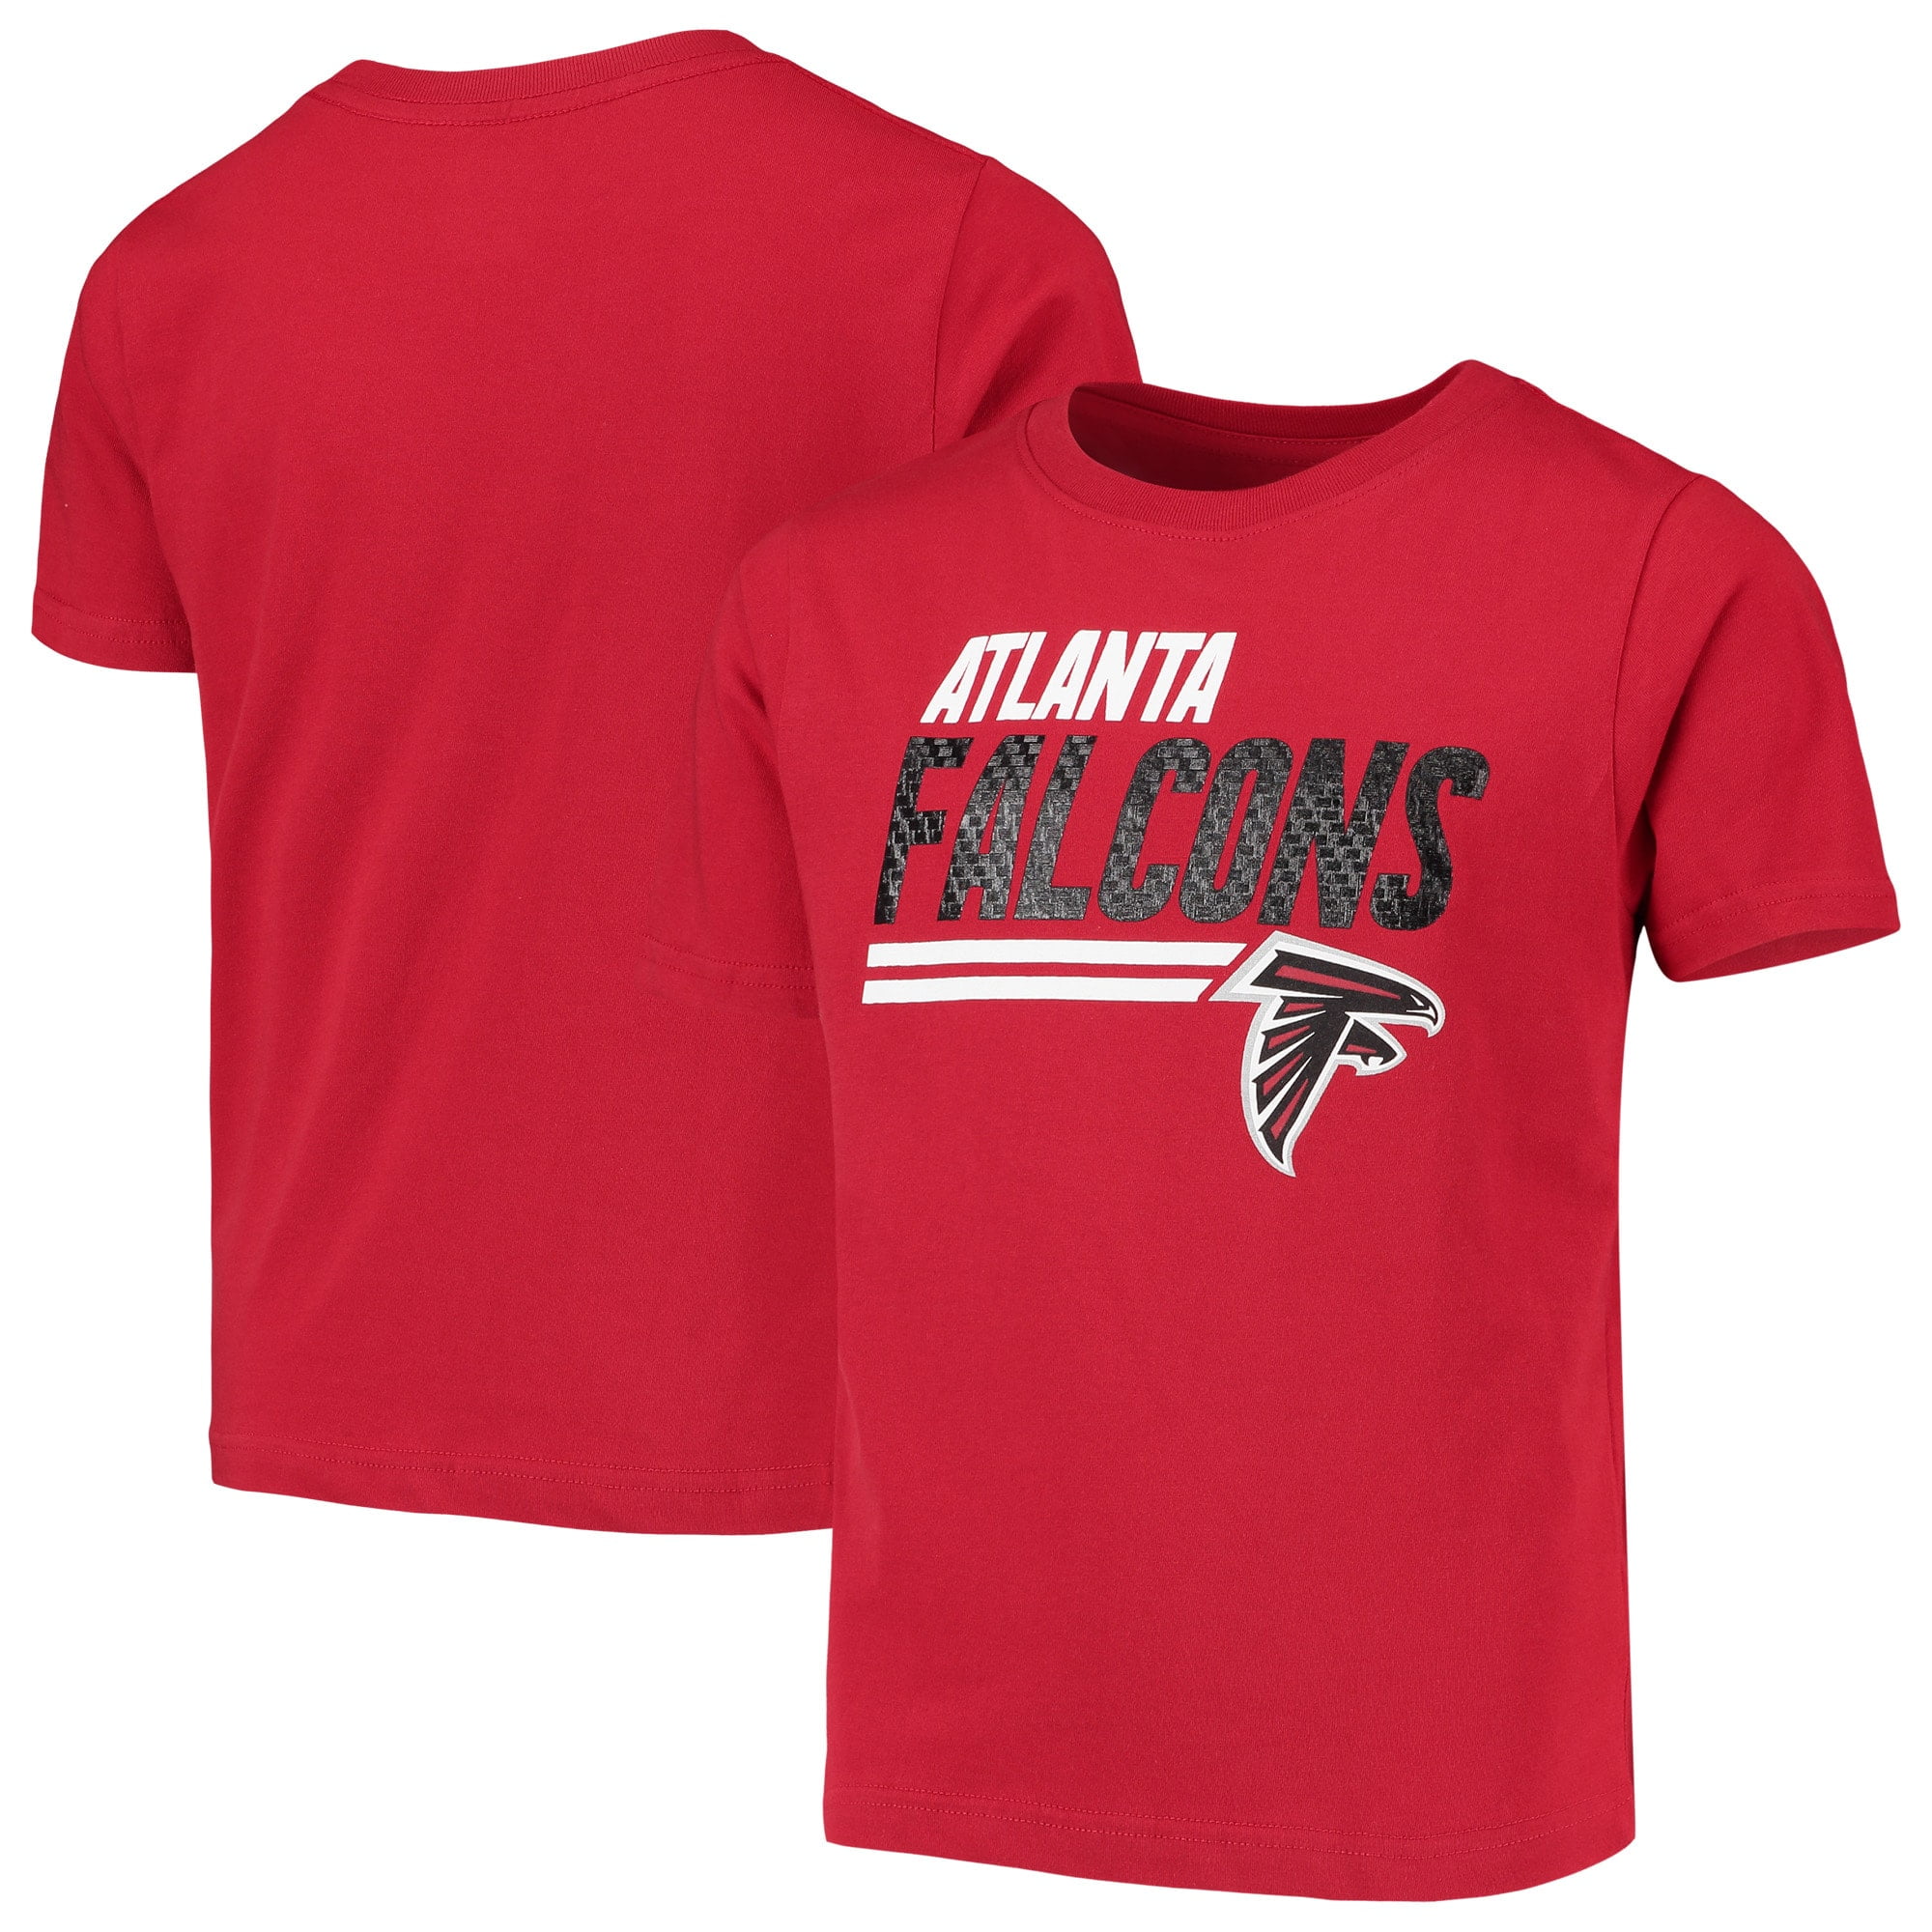 Atlanta Falcons Kids - Walmart.com